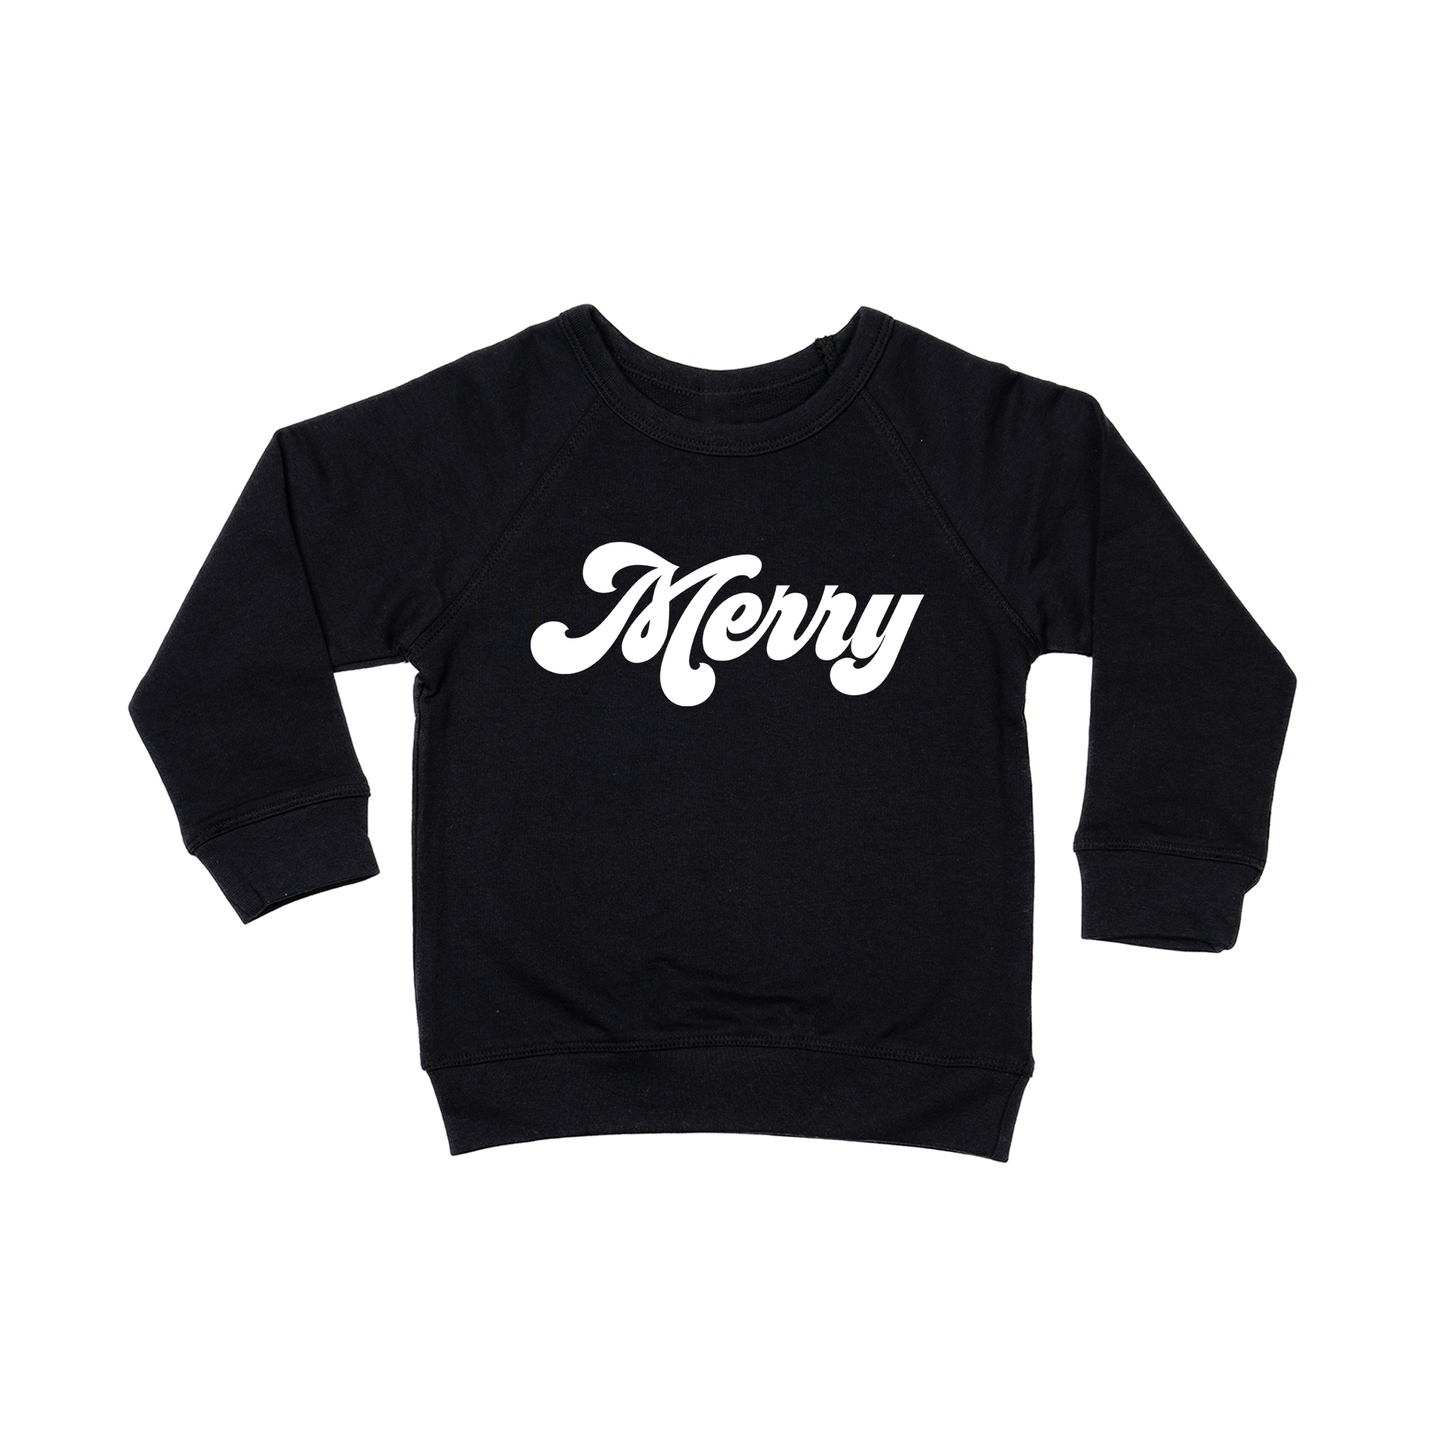 Merry (Retro, White) - Kids Sweatshirt (Black)